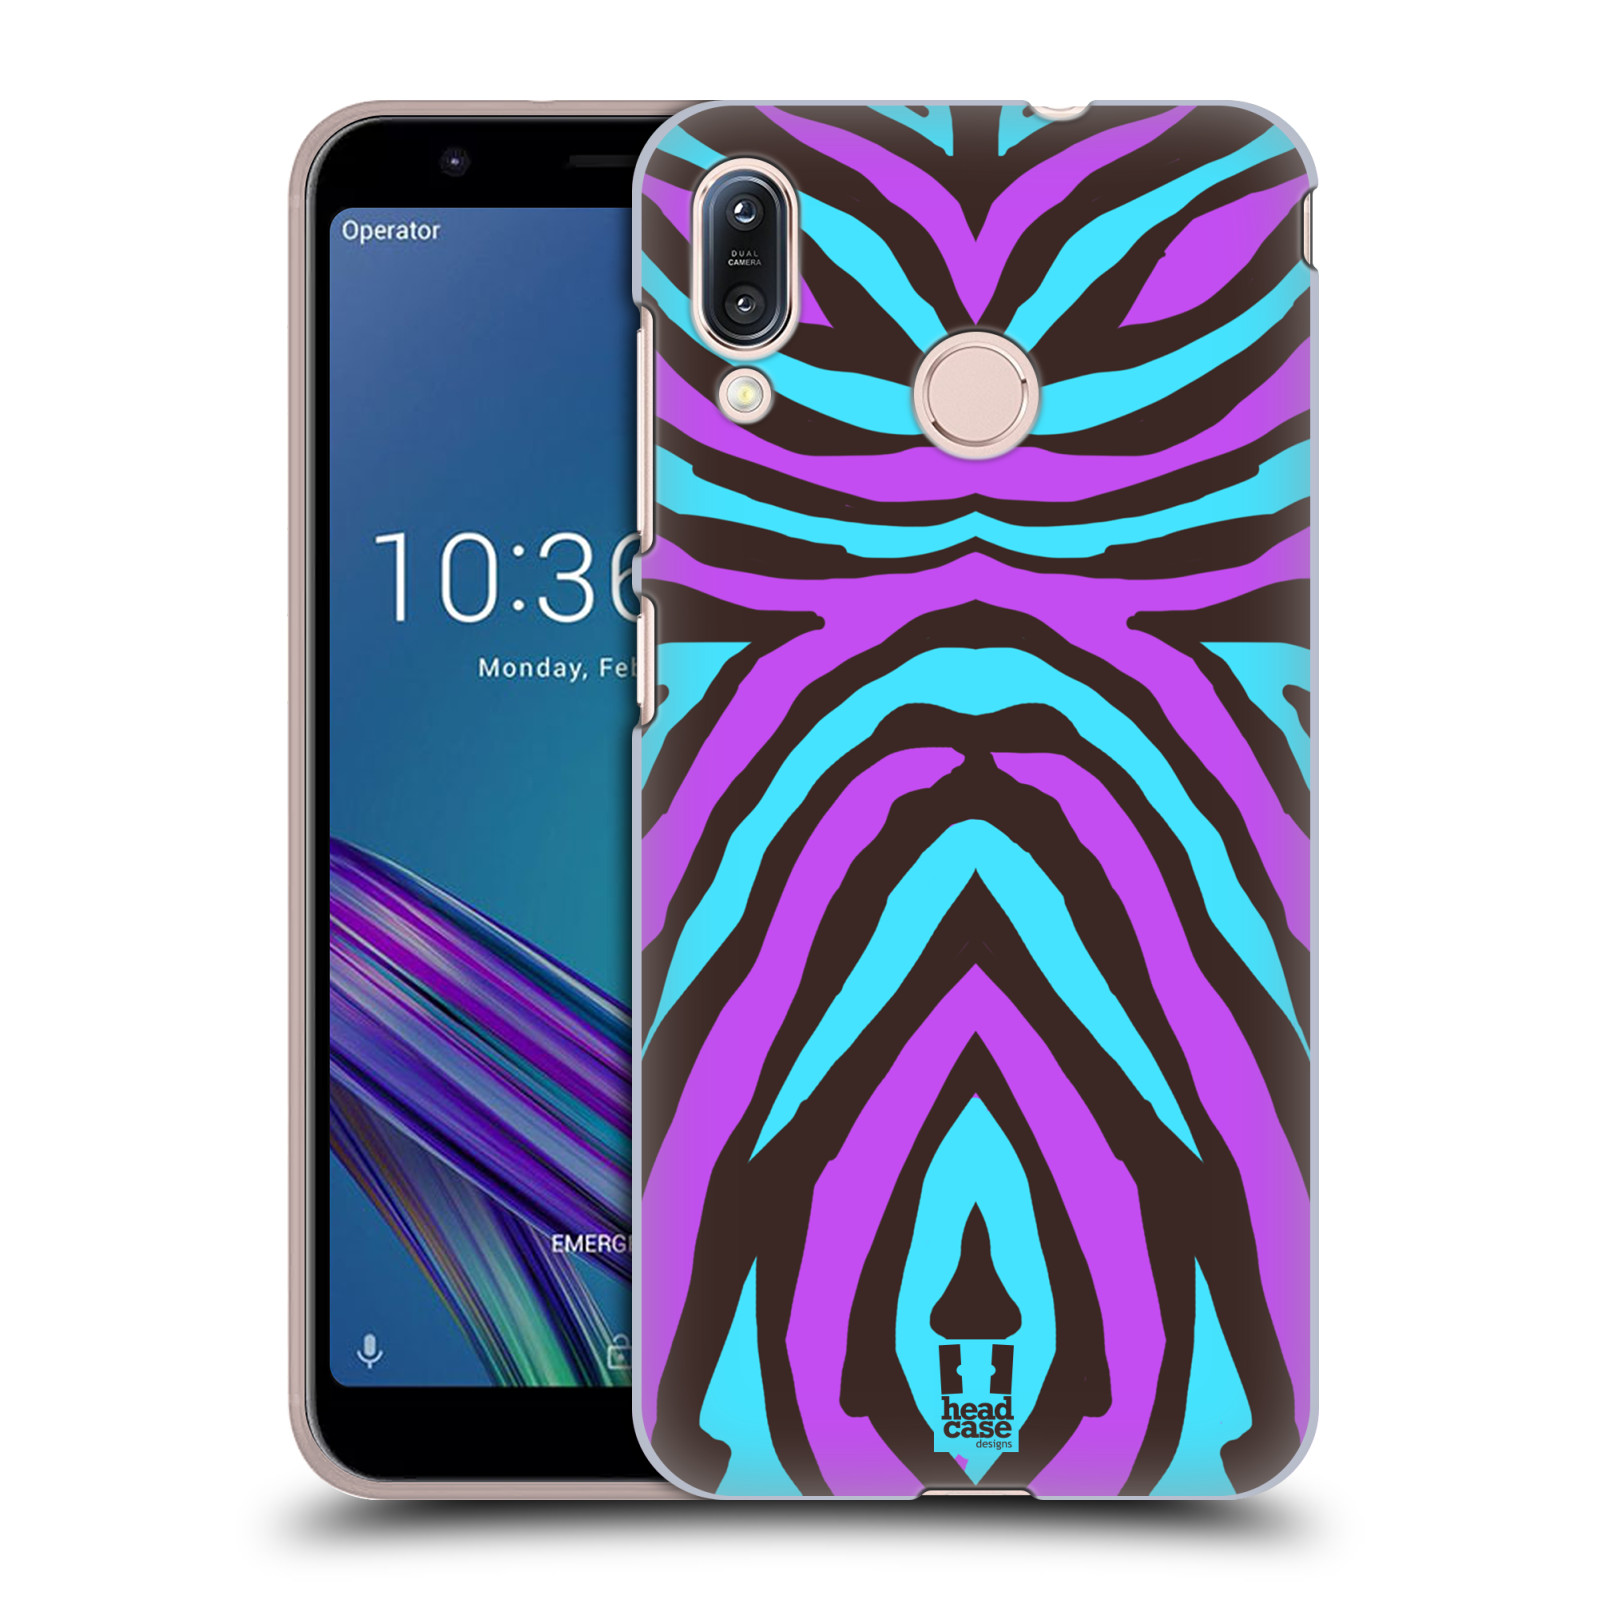 Pouzdro na mobil Asus Zenfone Max M1 (ZB555KL) - HEAD CASE - vzor Divočina zvíře 2 bláznivé pruhy fialová a modrá